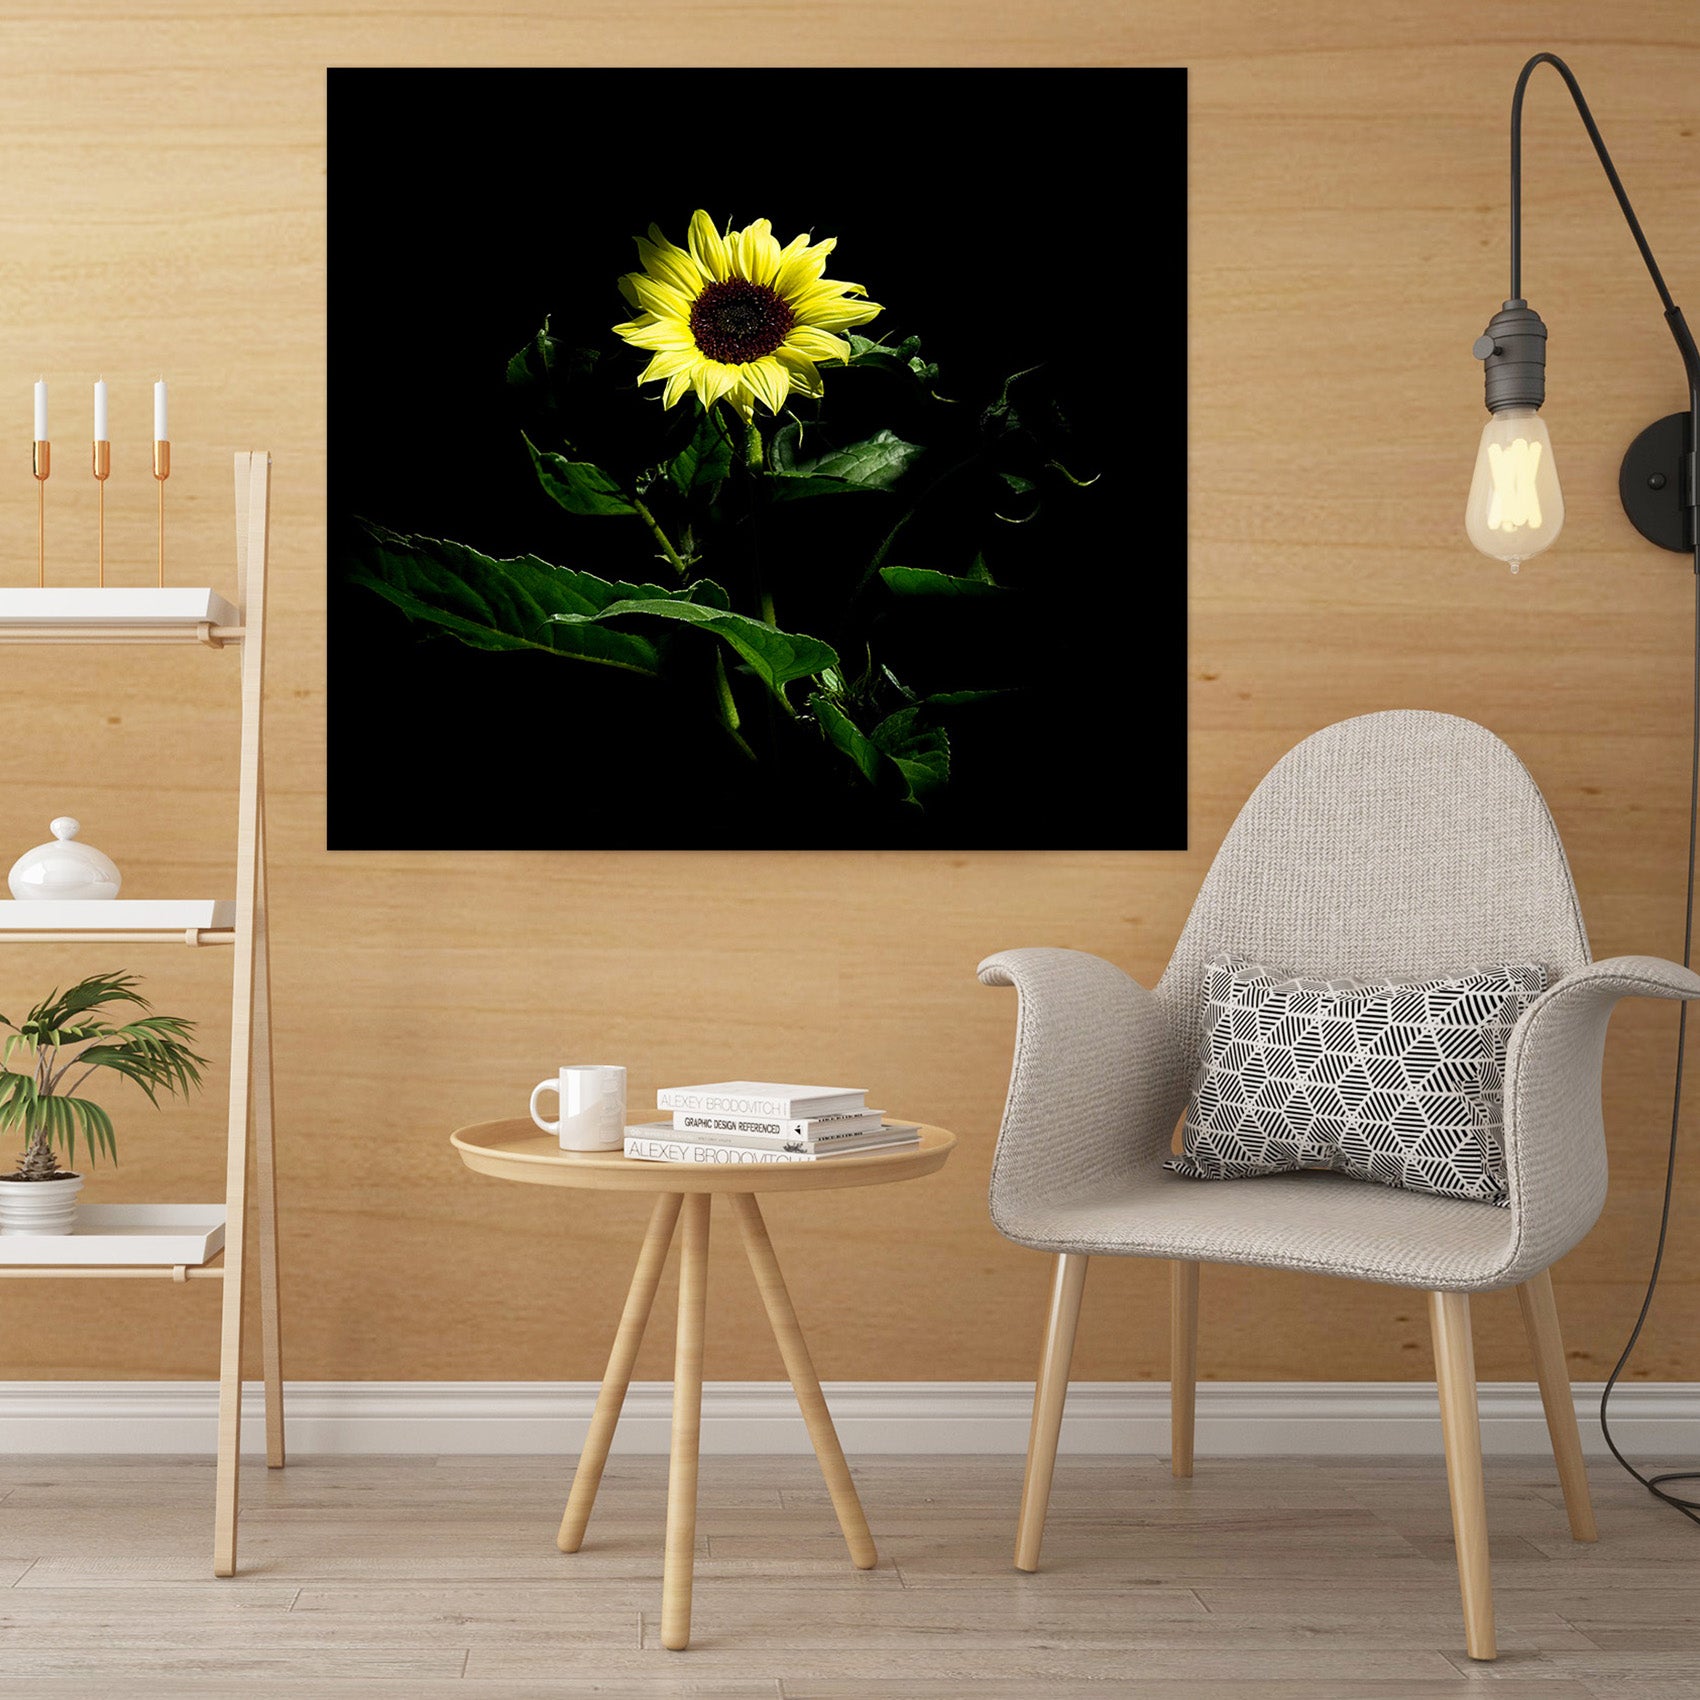 3D Sunflower 026 Kathy Barefield Wall Sticker